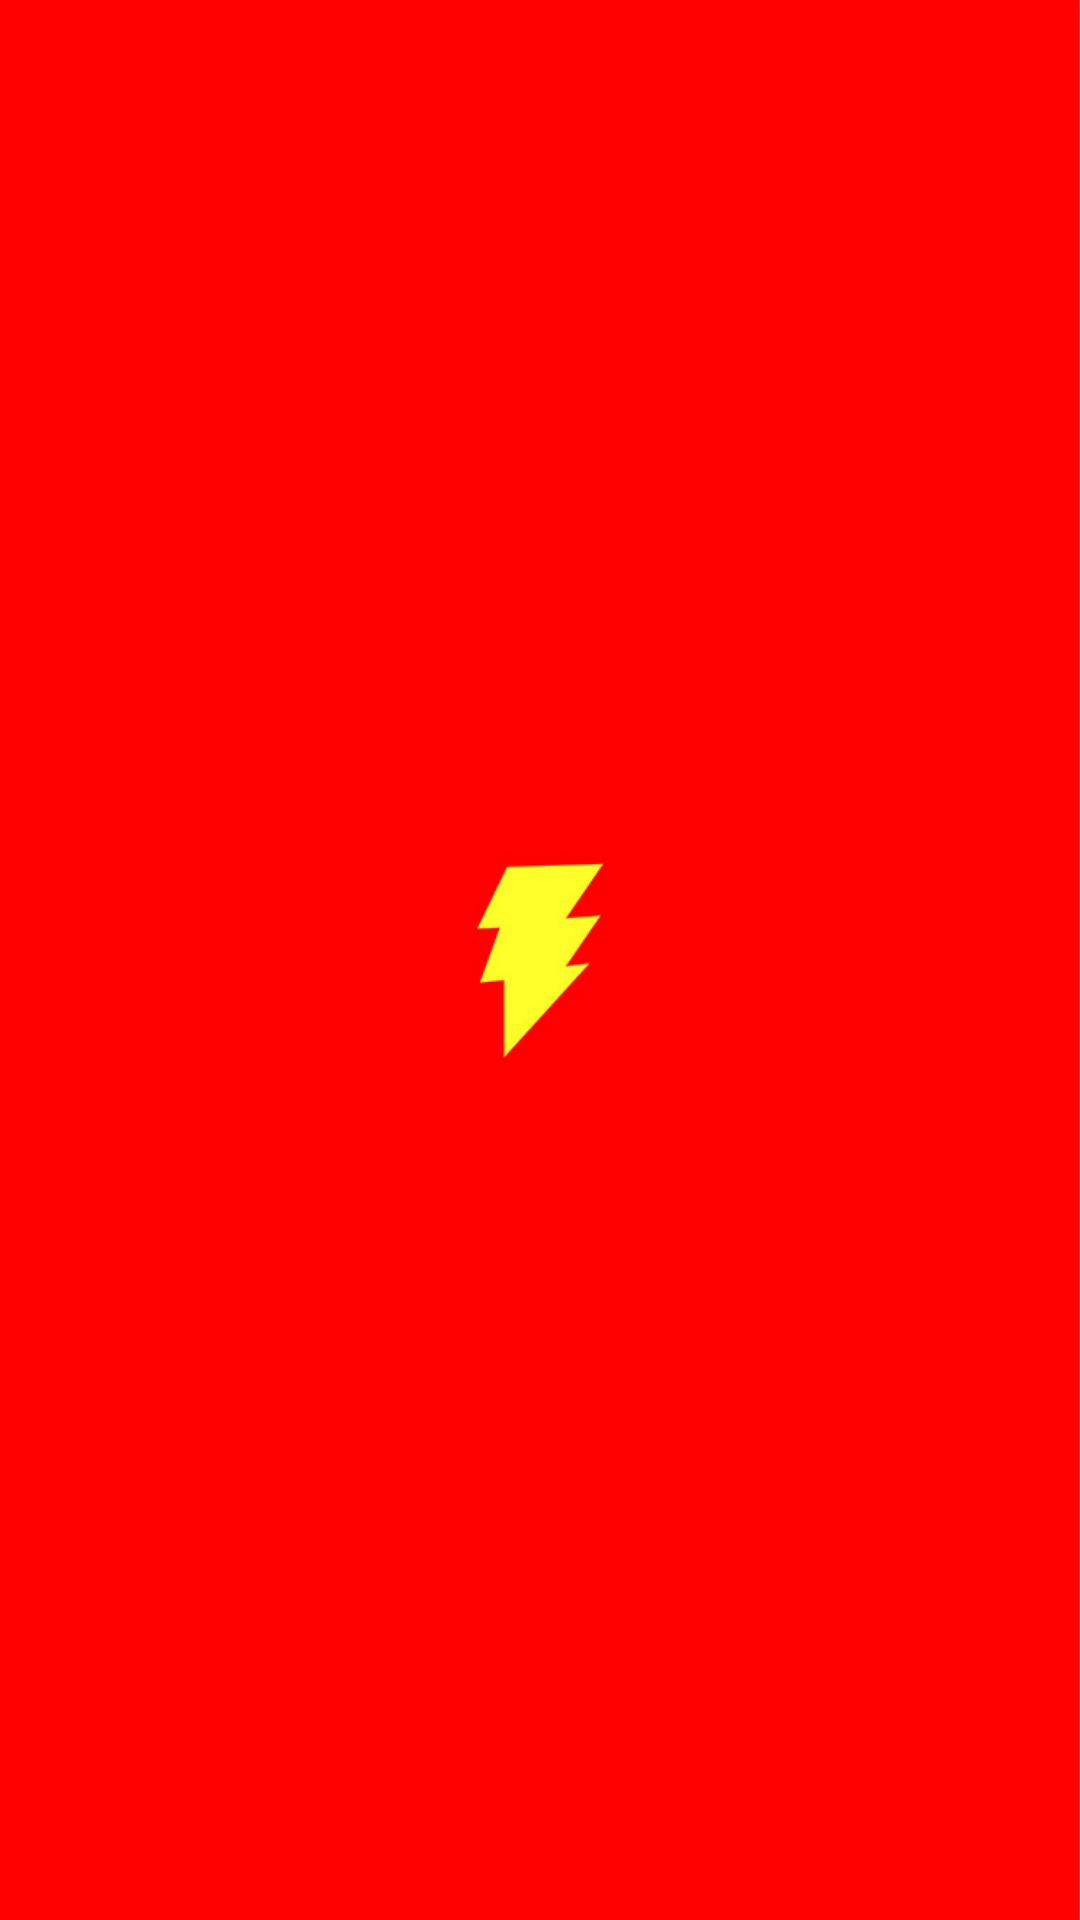 Flash Comic Hero Minimal Red Art Logo iPhone 8 Wallpaper Free